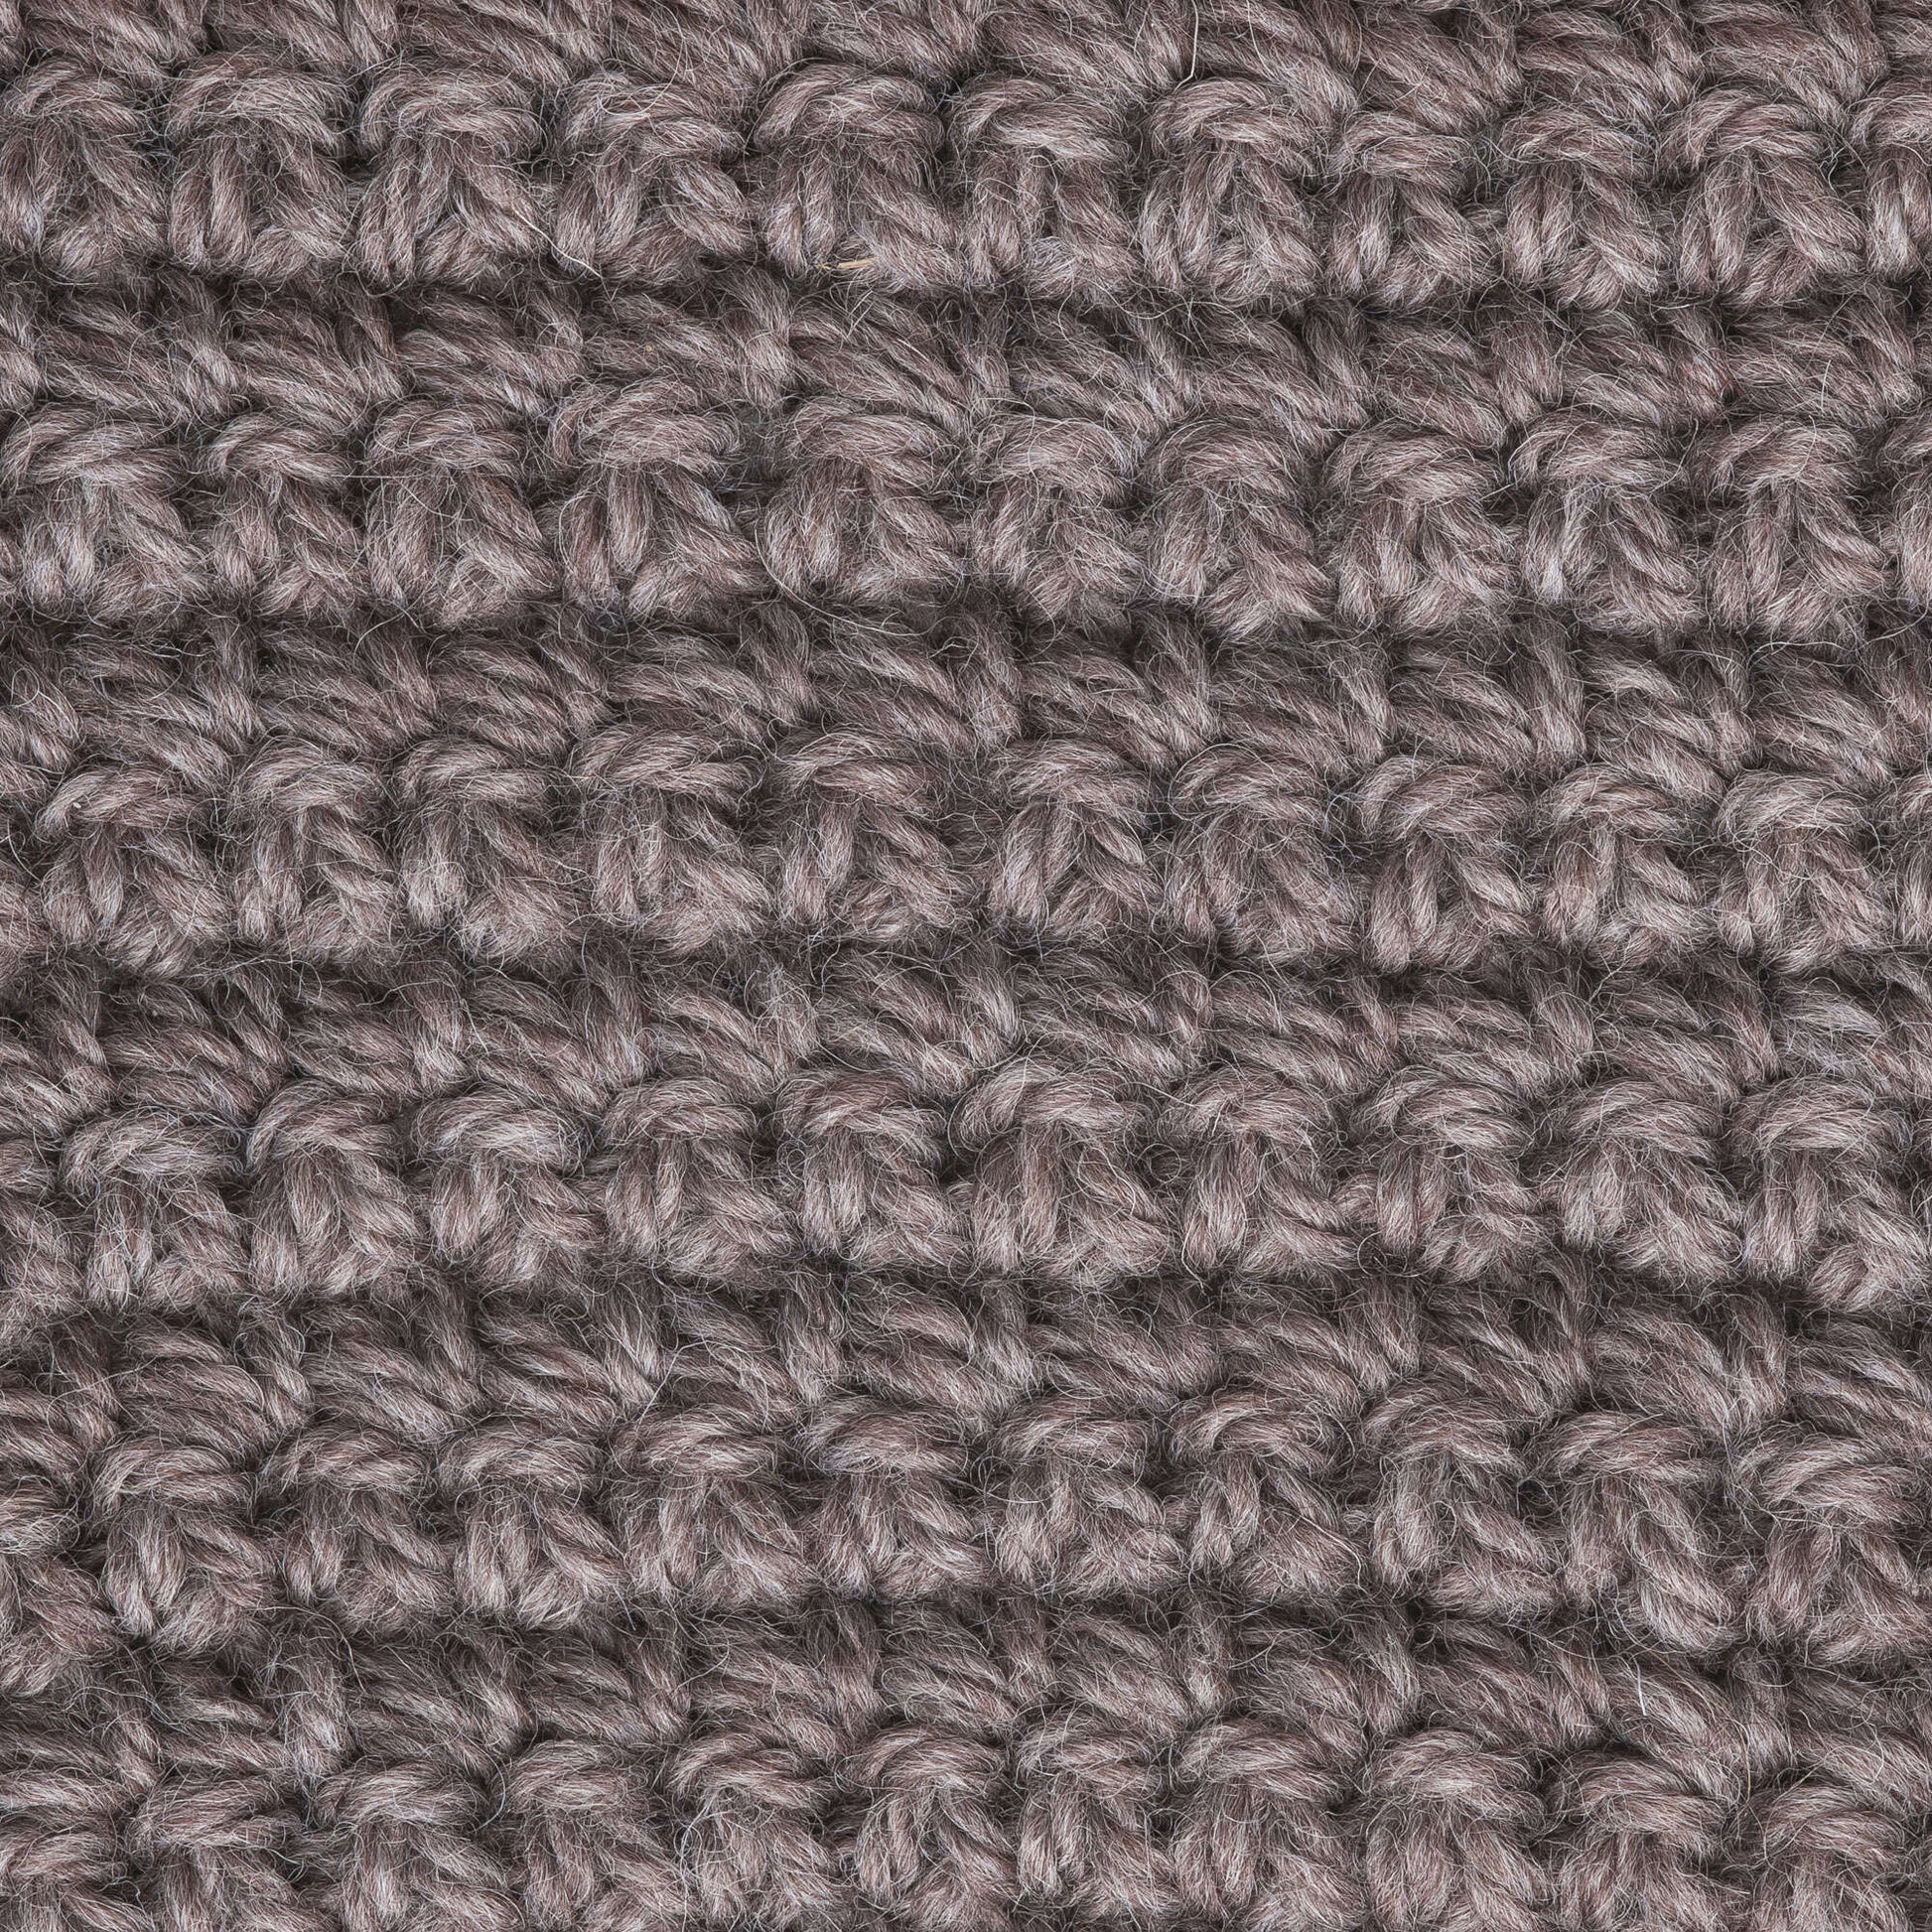 Patons Classic Wool, Aran Yarn